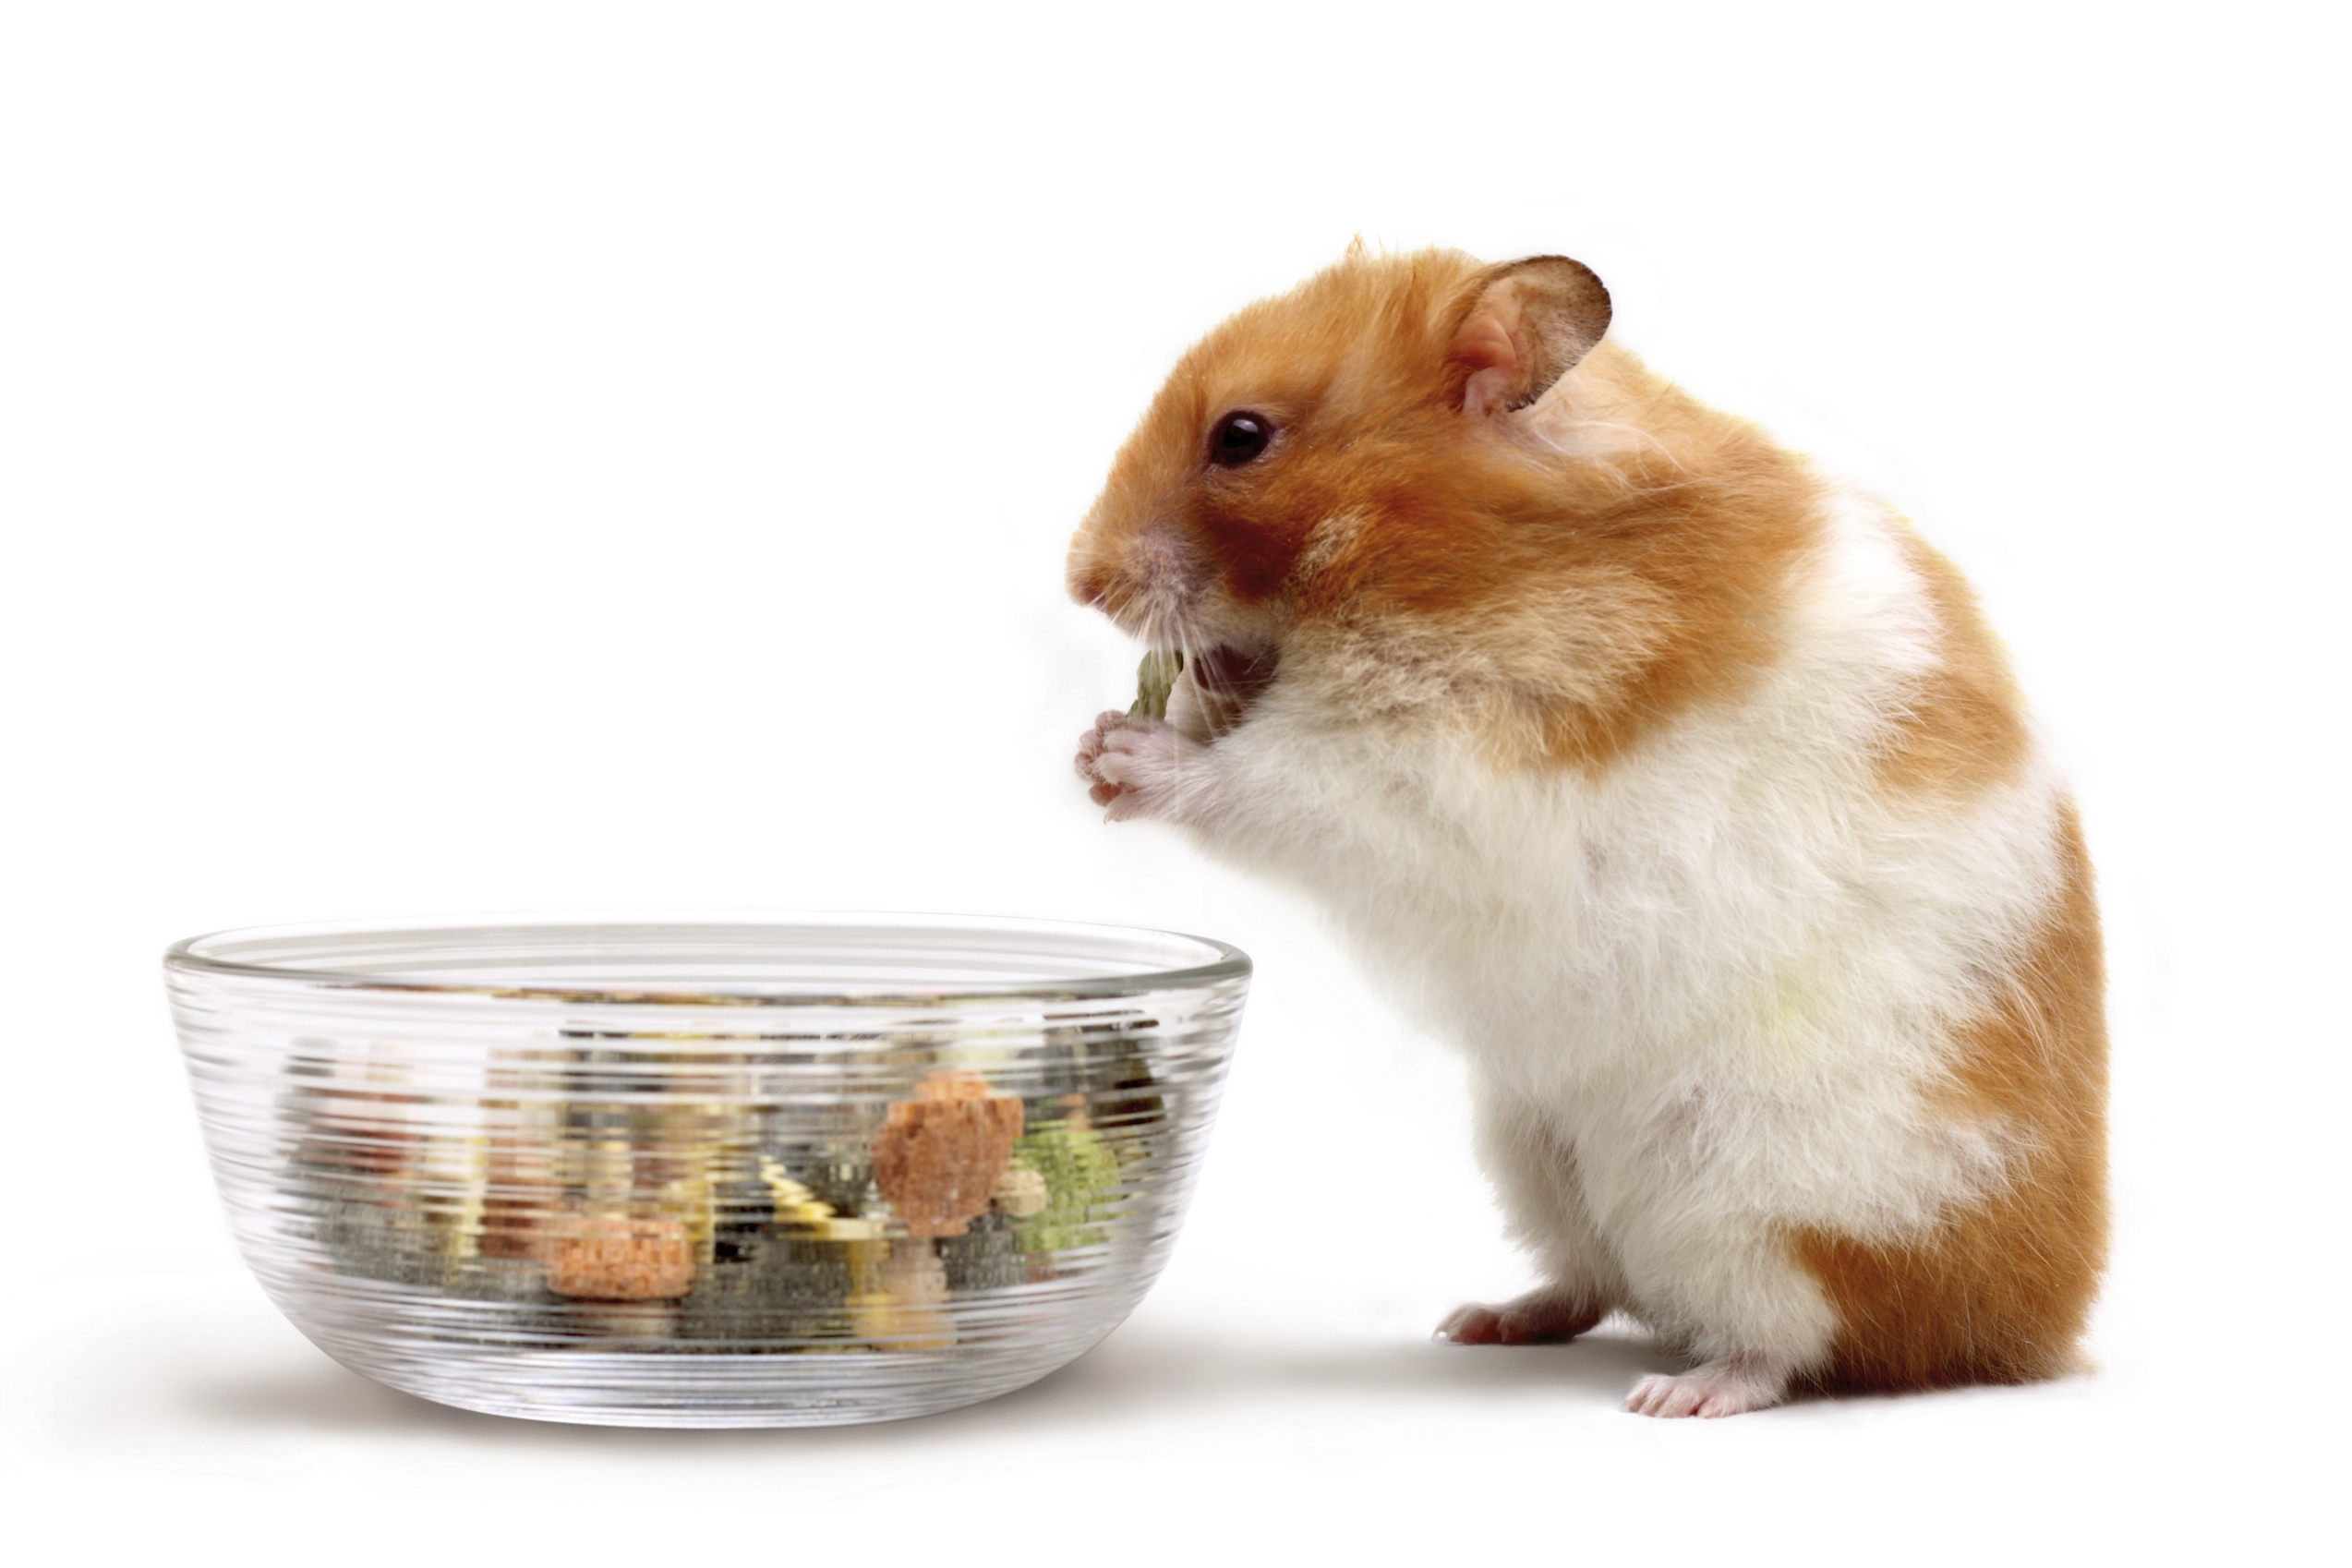 Offrir un hamster à Noël : ce qu'il faut savoir avant de faire ce